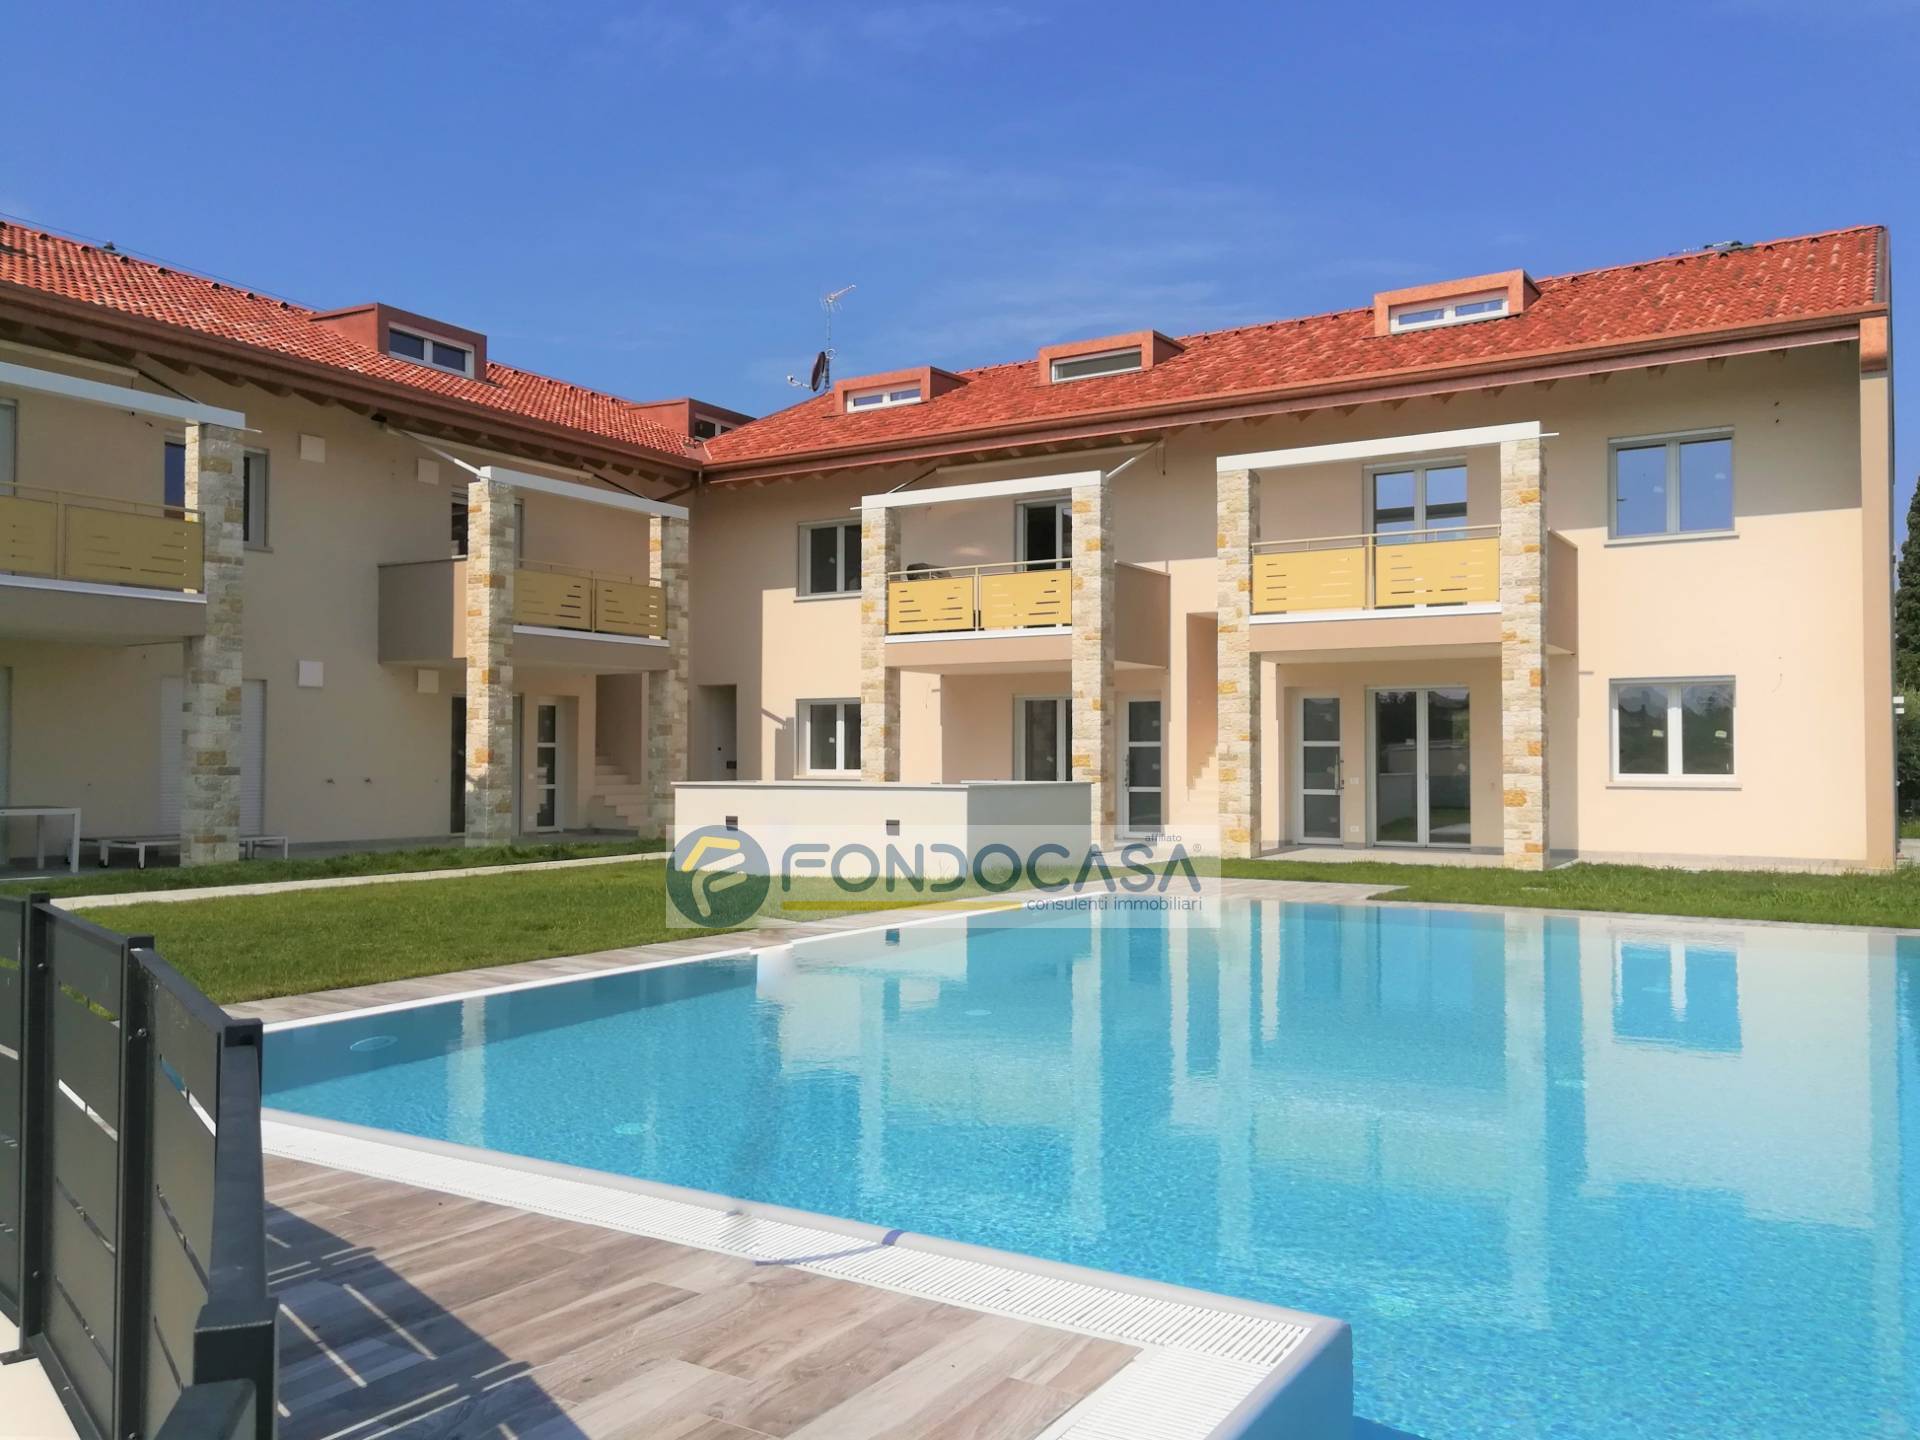 Appartamento in vendita a Castelnuovo del Garda, 4 locali, zona hi, prezzo € 425.000 | PortaleAgenzieImmobiliari.it